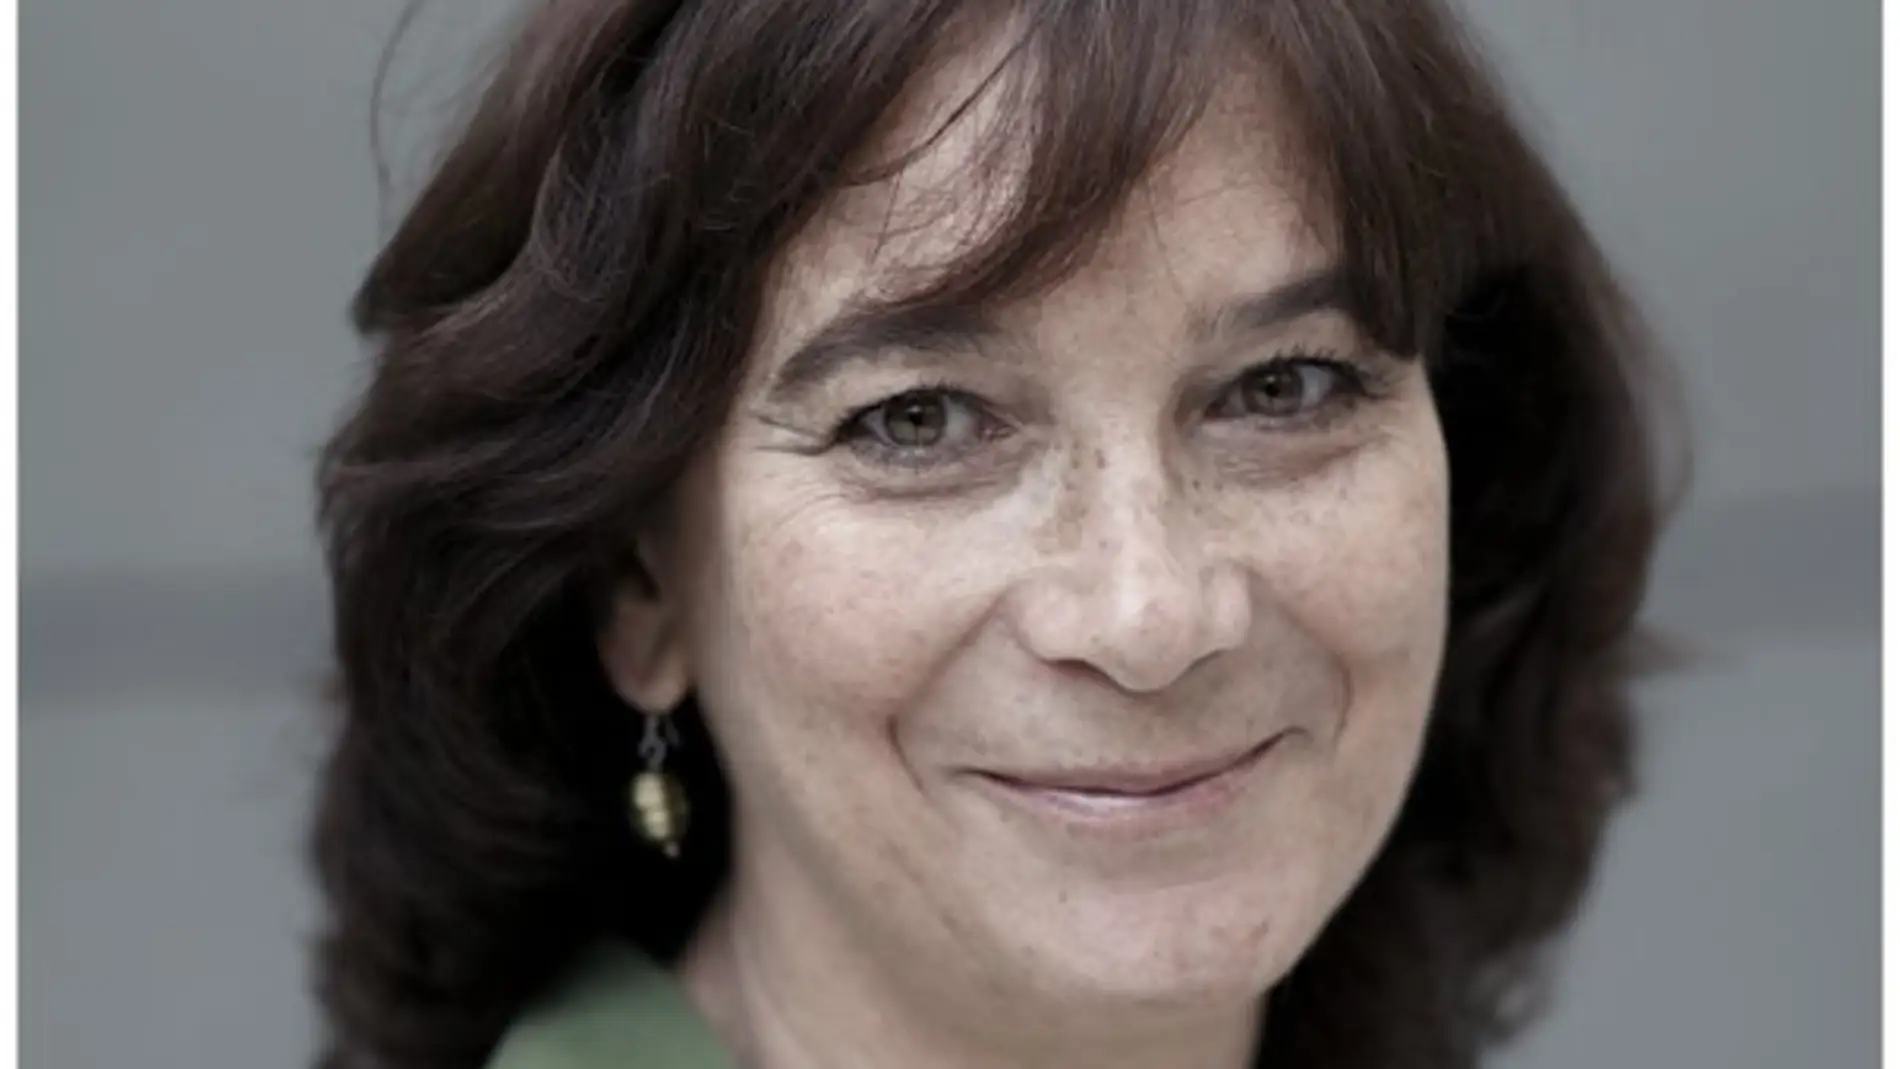 La directora y guionista Patricia Ferreira ha fallecido como consecuencia de un tumor cerebral.